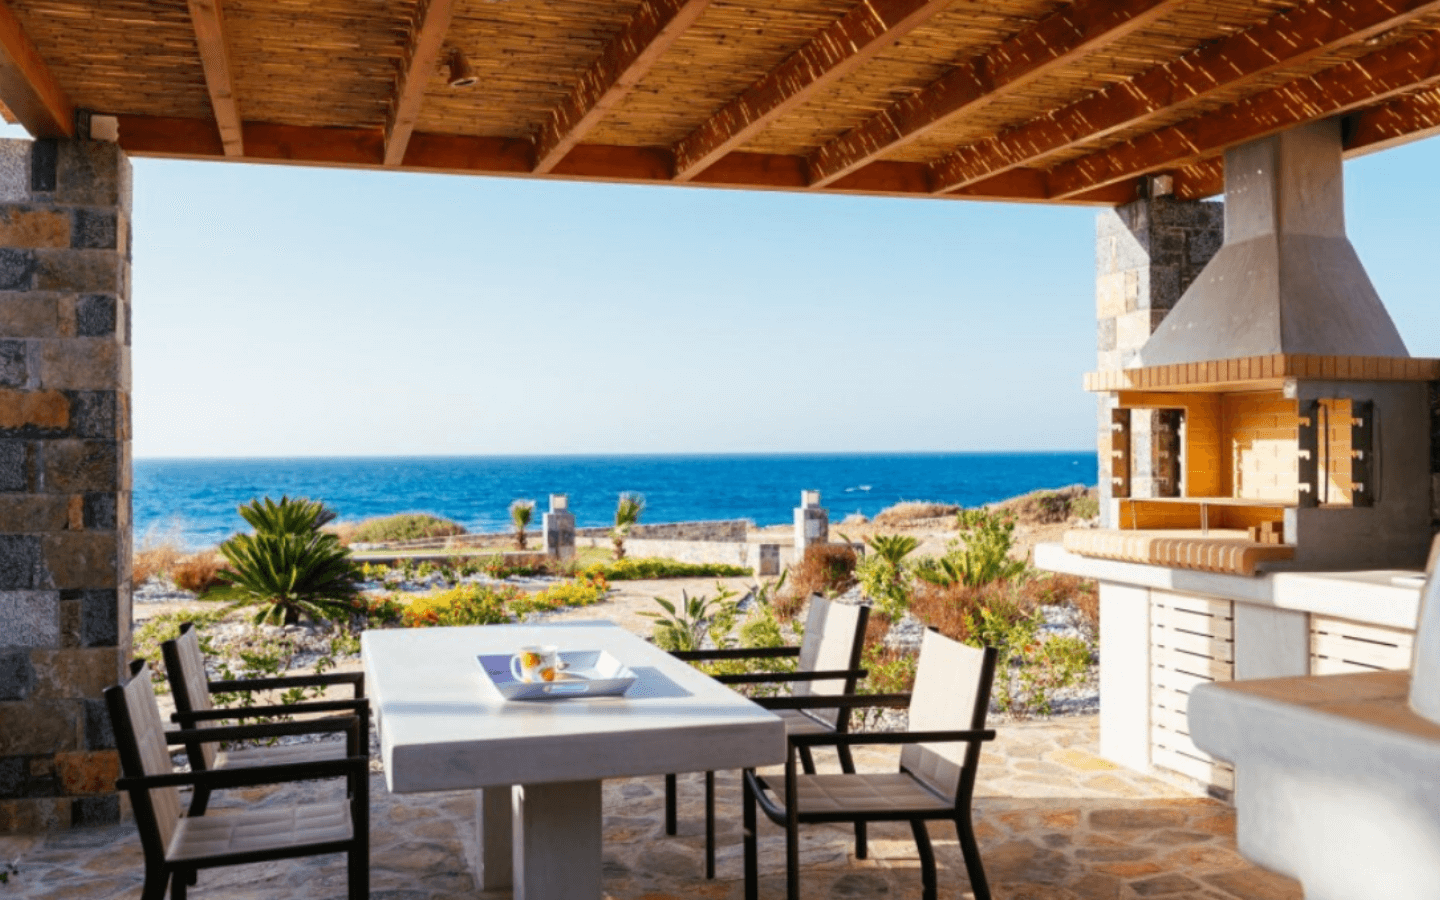 Villa à vendre avec piscine à débordement en bord de mer, Grèce